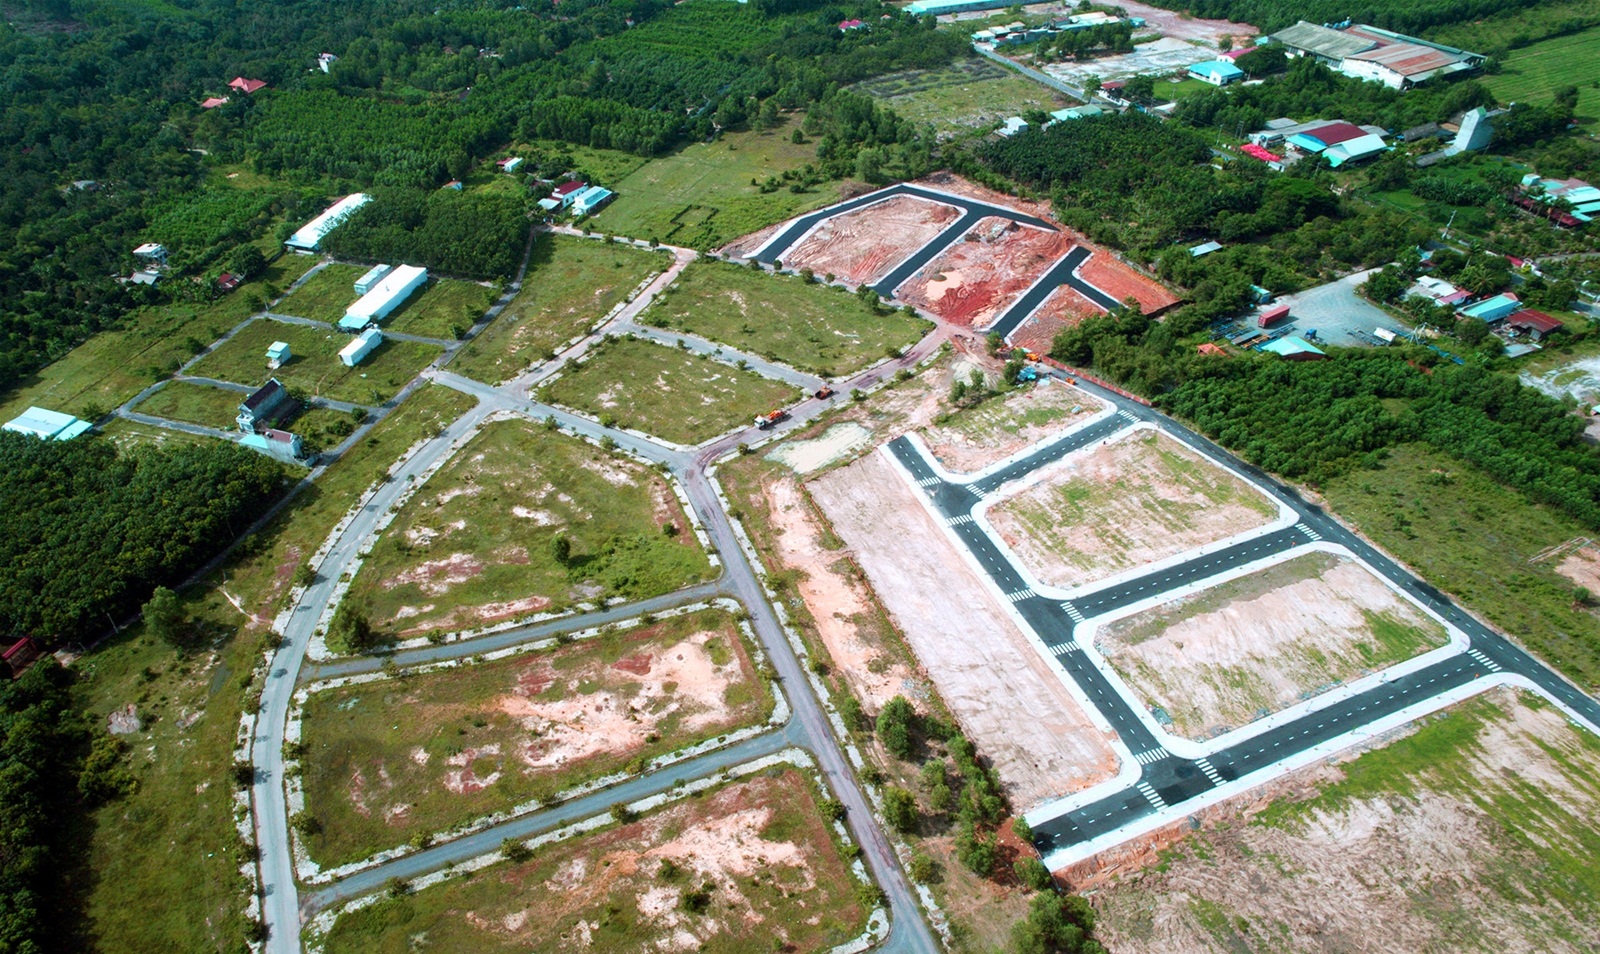 Hình ảnh một khu đất được phân lô bán nền nhìn từ trên cao với xung quanh lác đác các công trình nhà ở, xây dựng, rất nhiều cây xanh